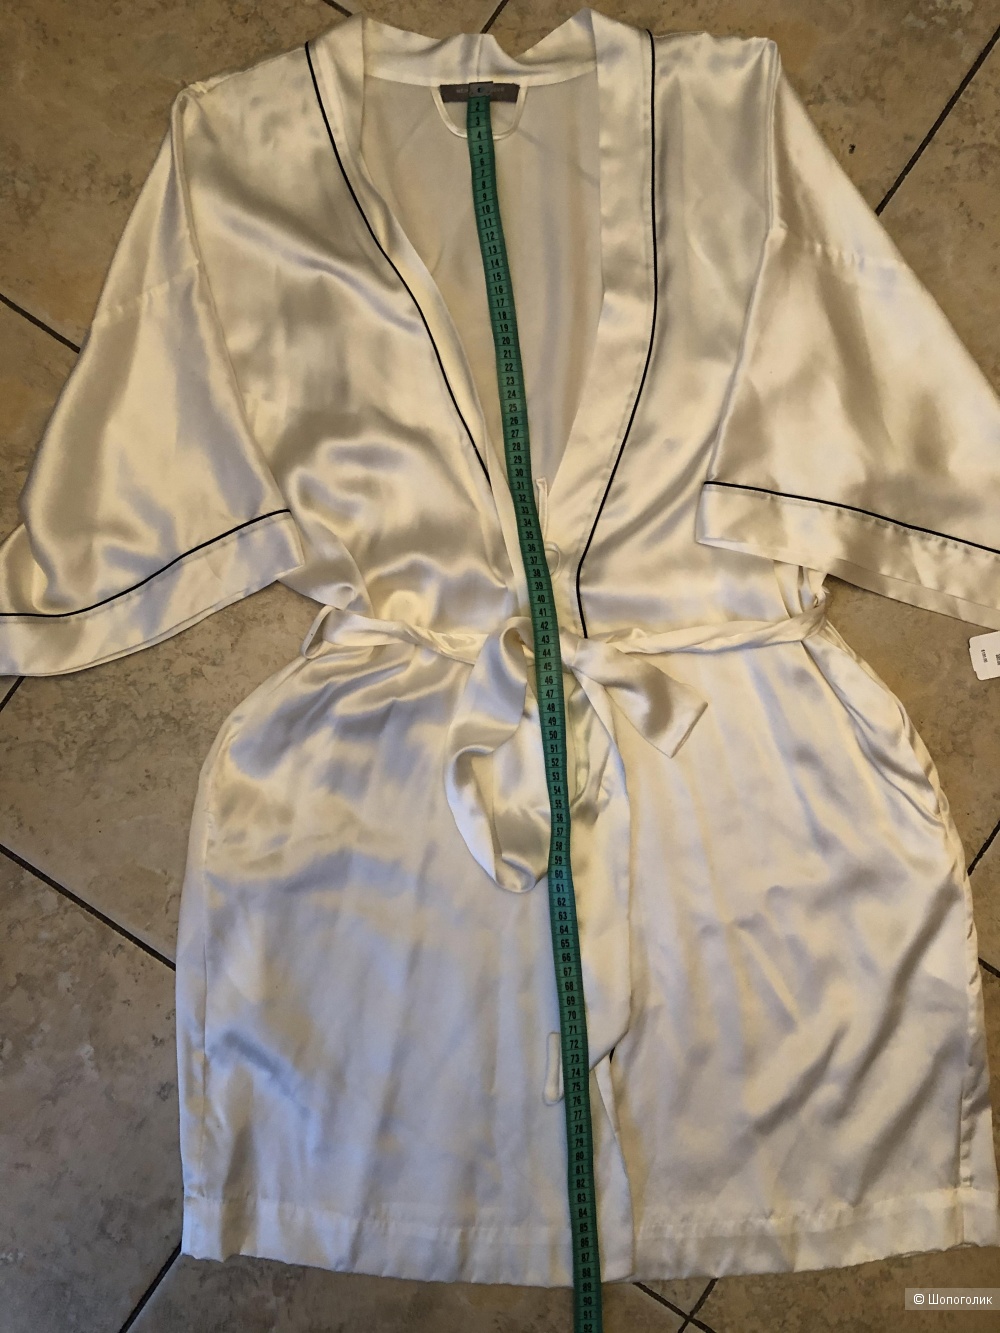 Шелковый халат-кимоно Neiman Marcus Intimates, размер L/XL, на S/M